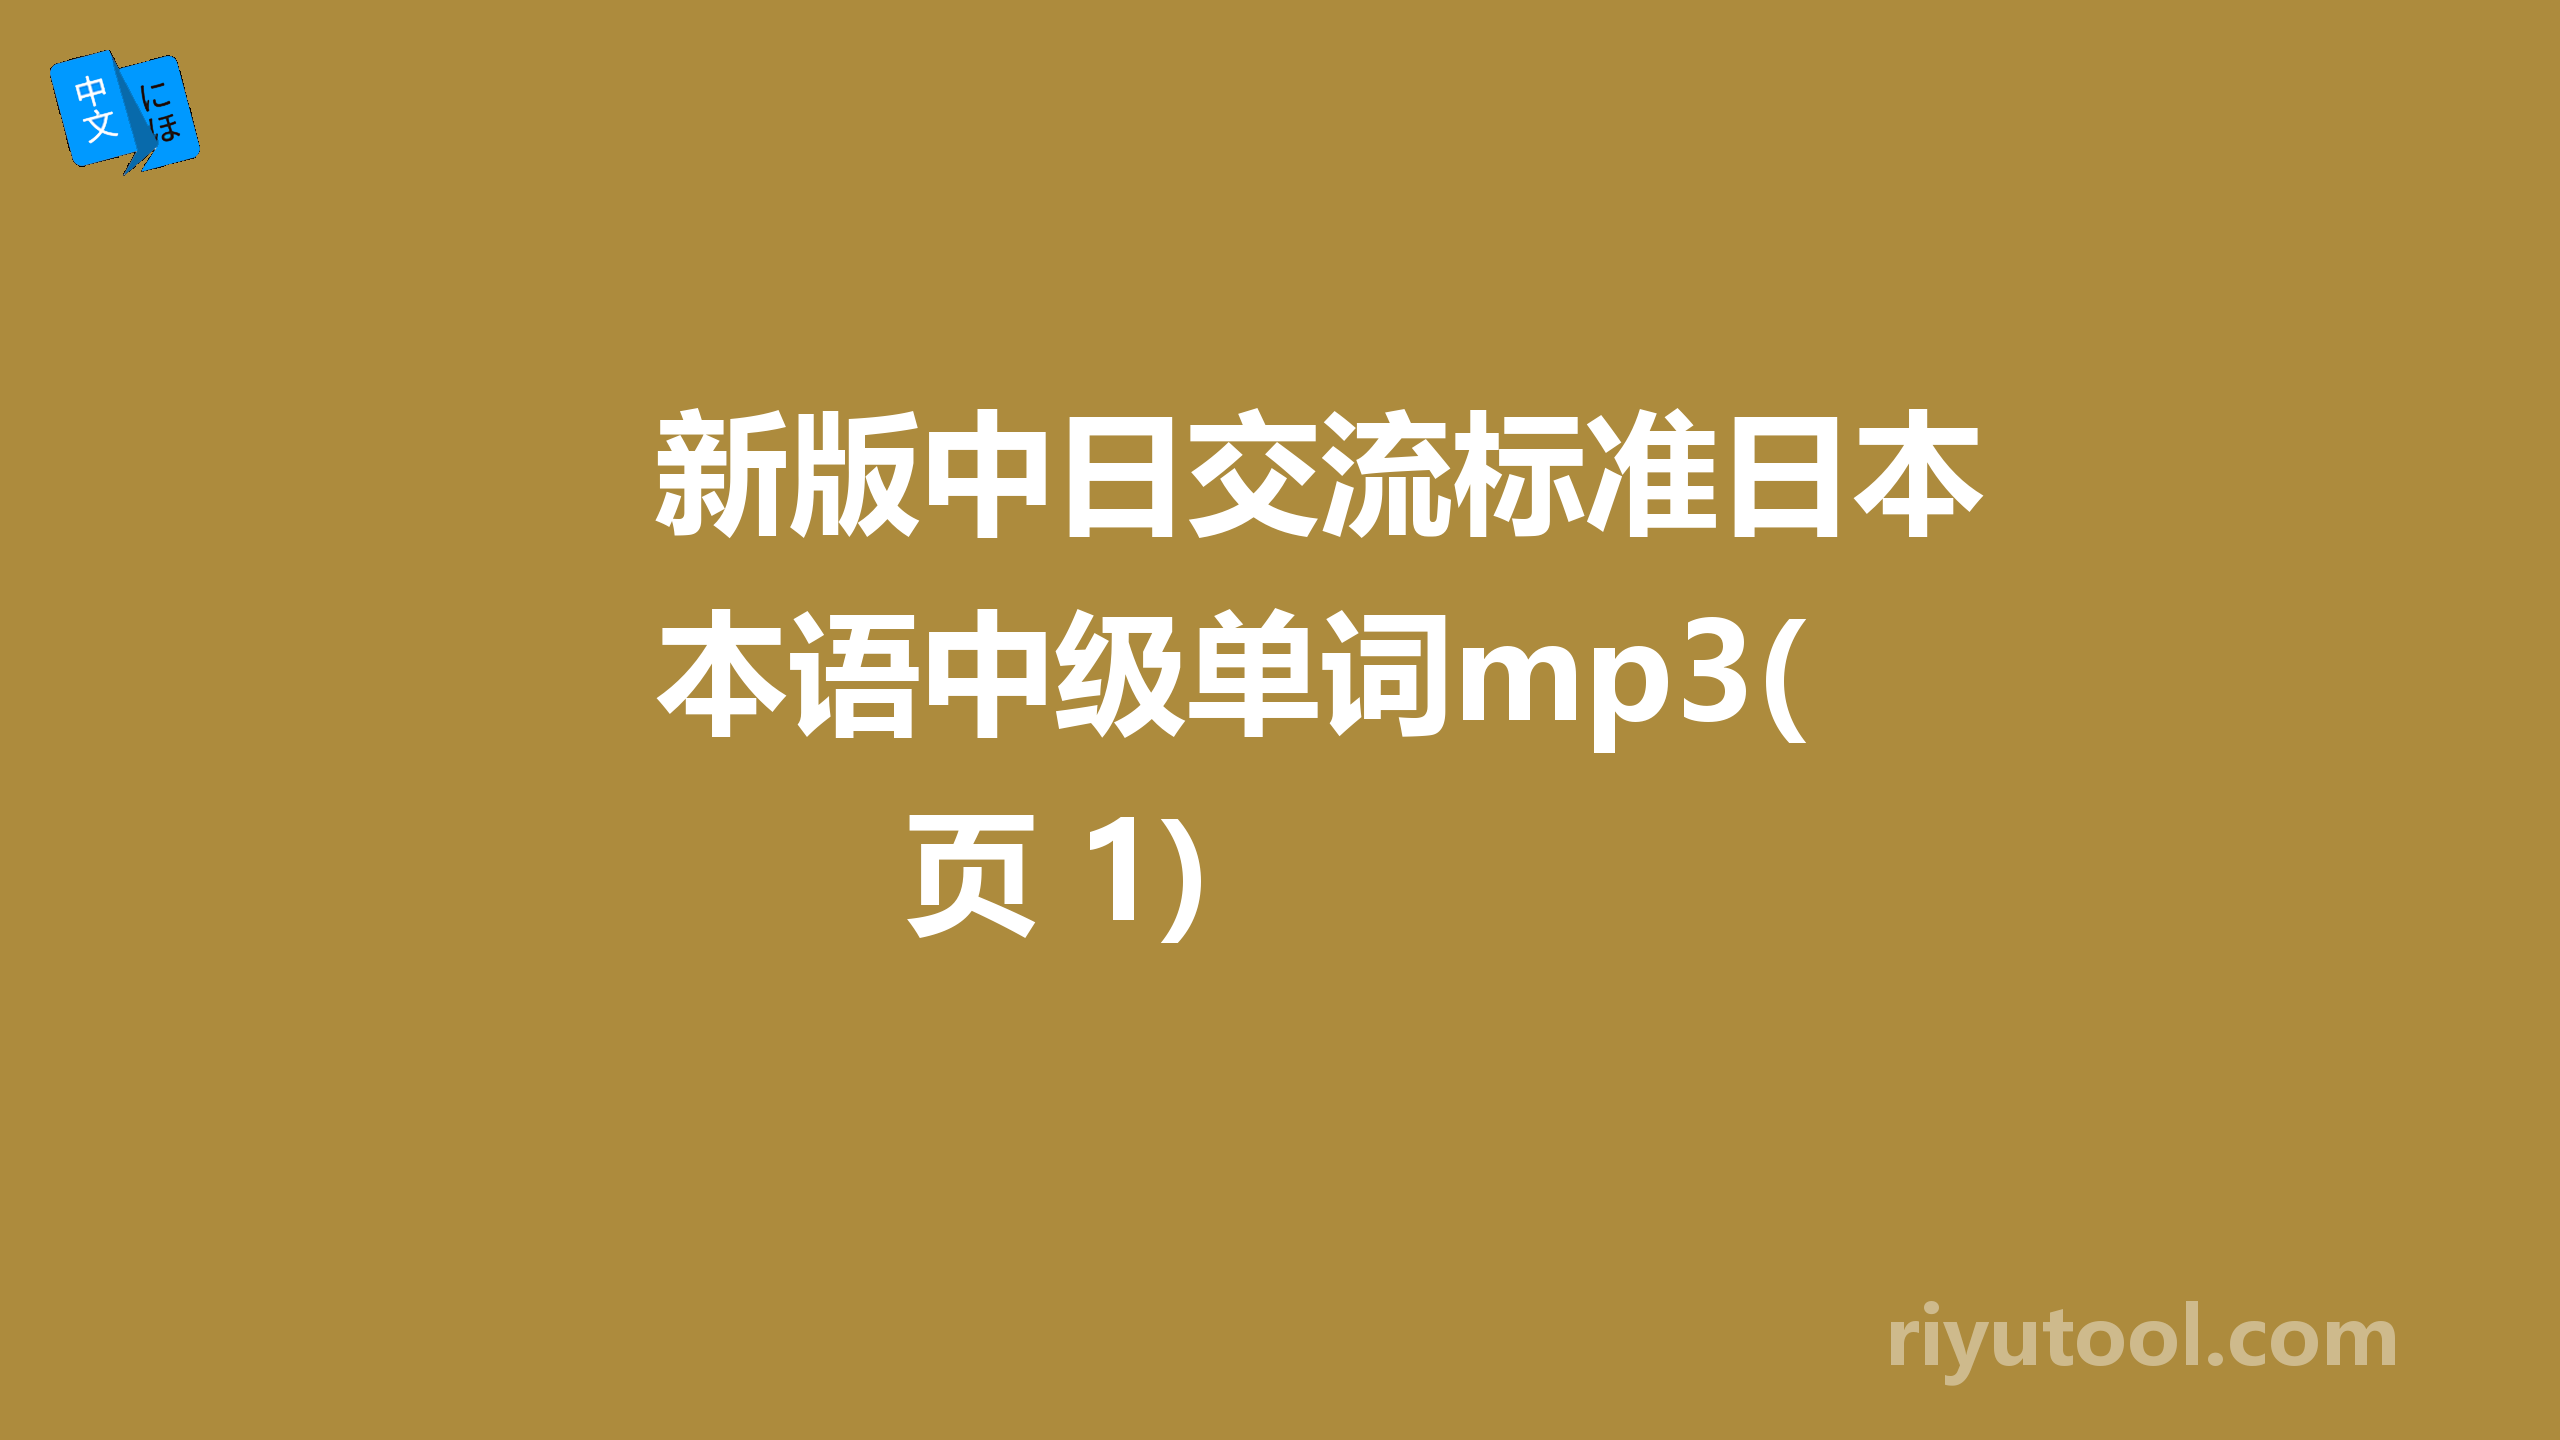 新版中日交流标准日本语中级单词mp3(页 1)  